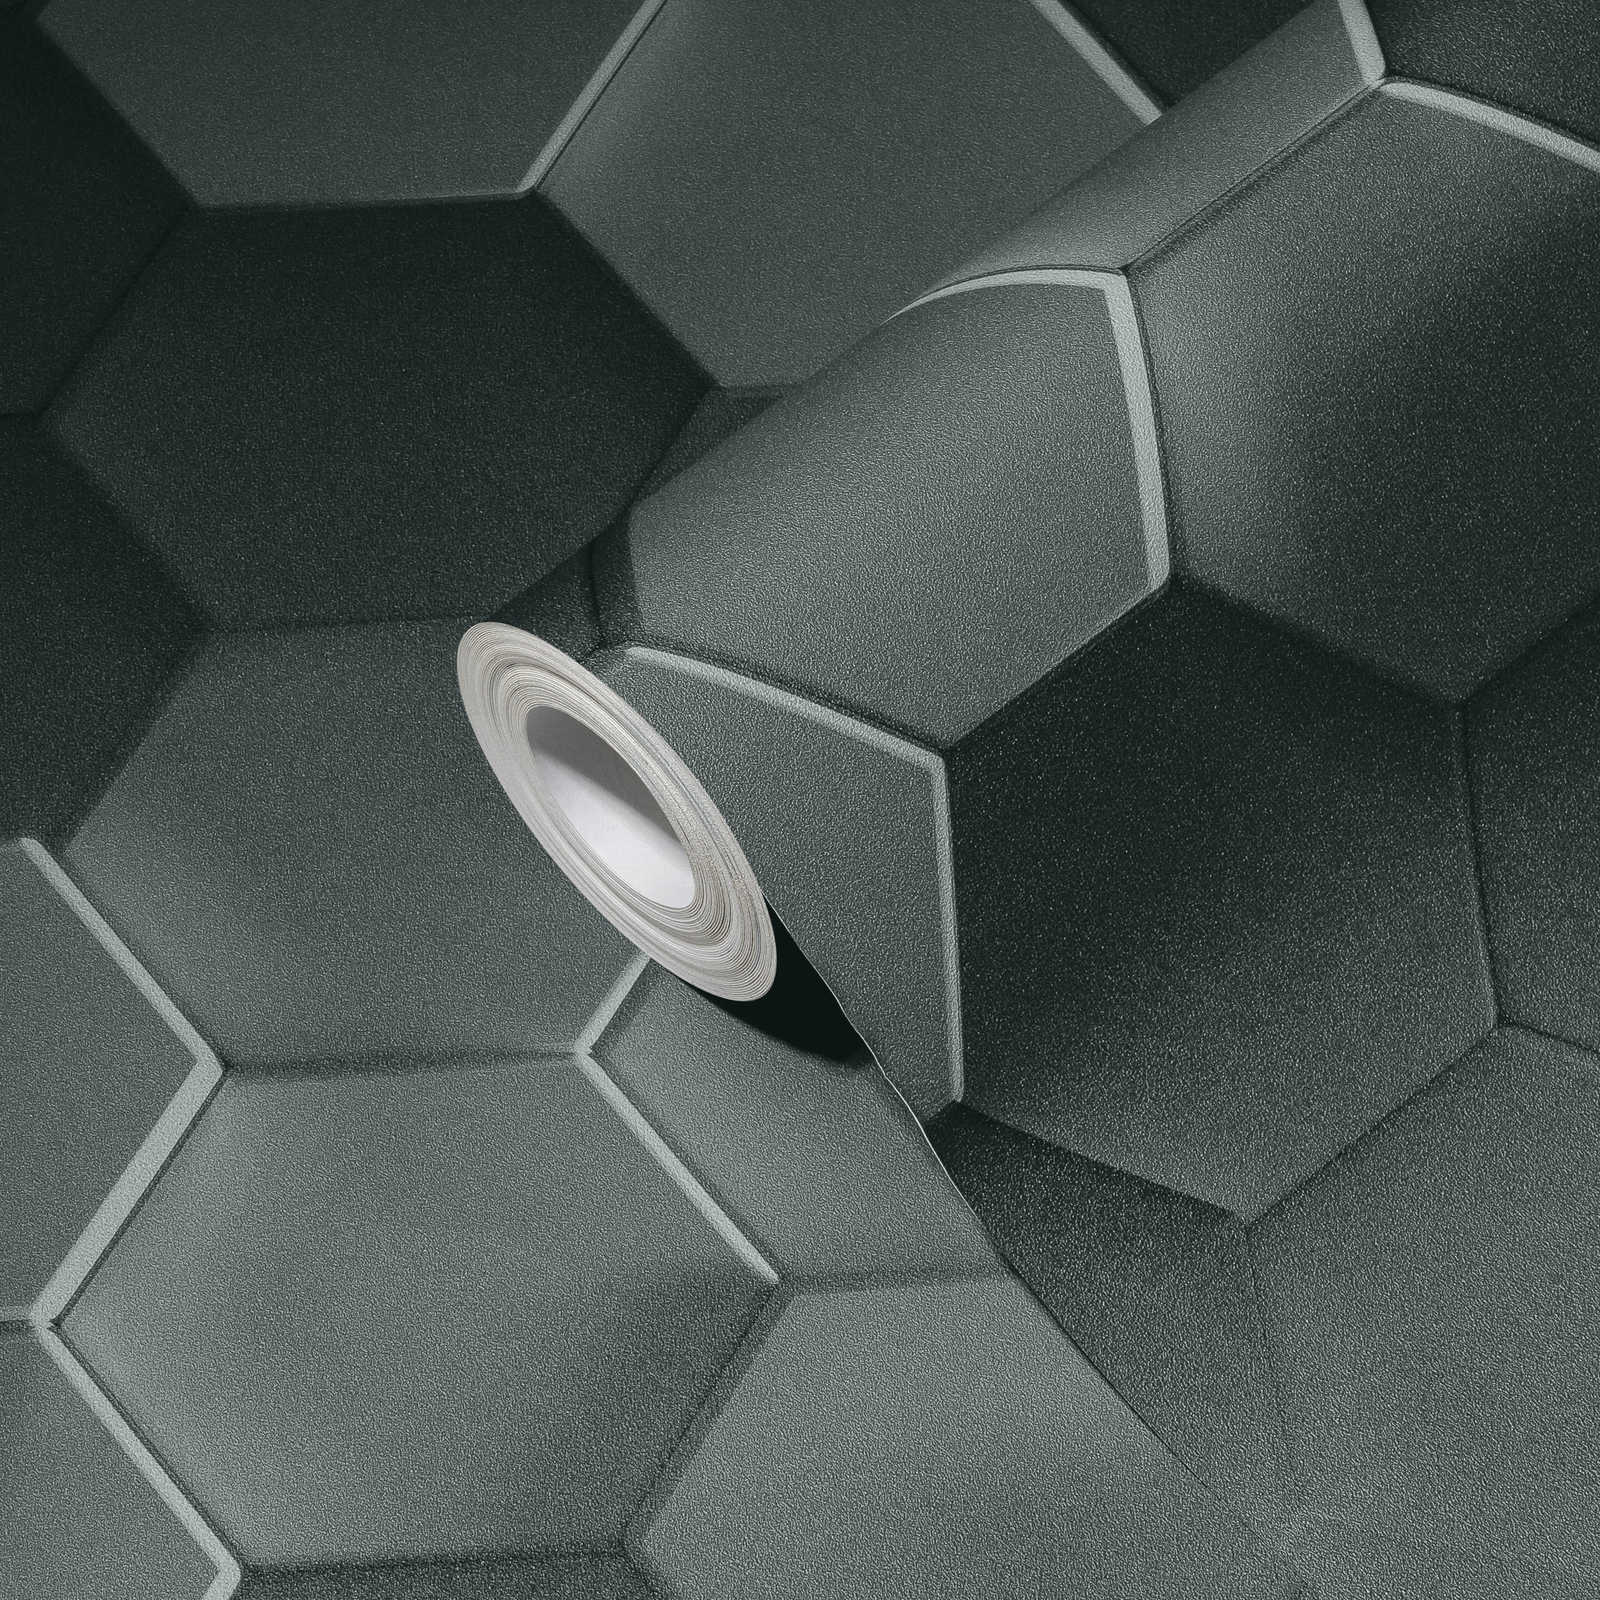             Papier peint hexagonal 3D motif graphique nid d'abeille - gris, noir
        